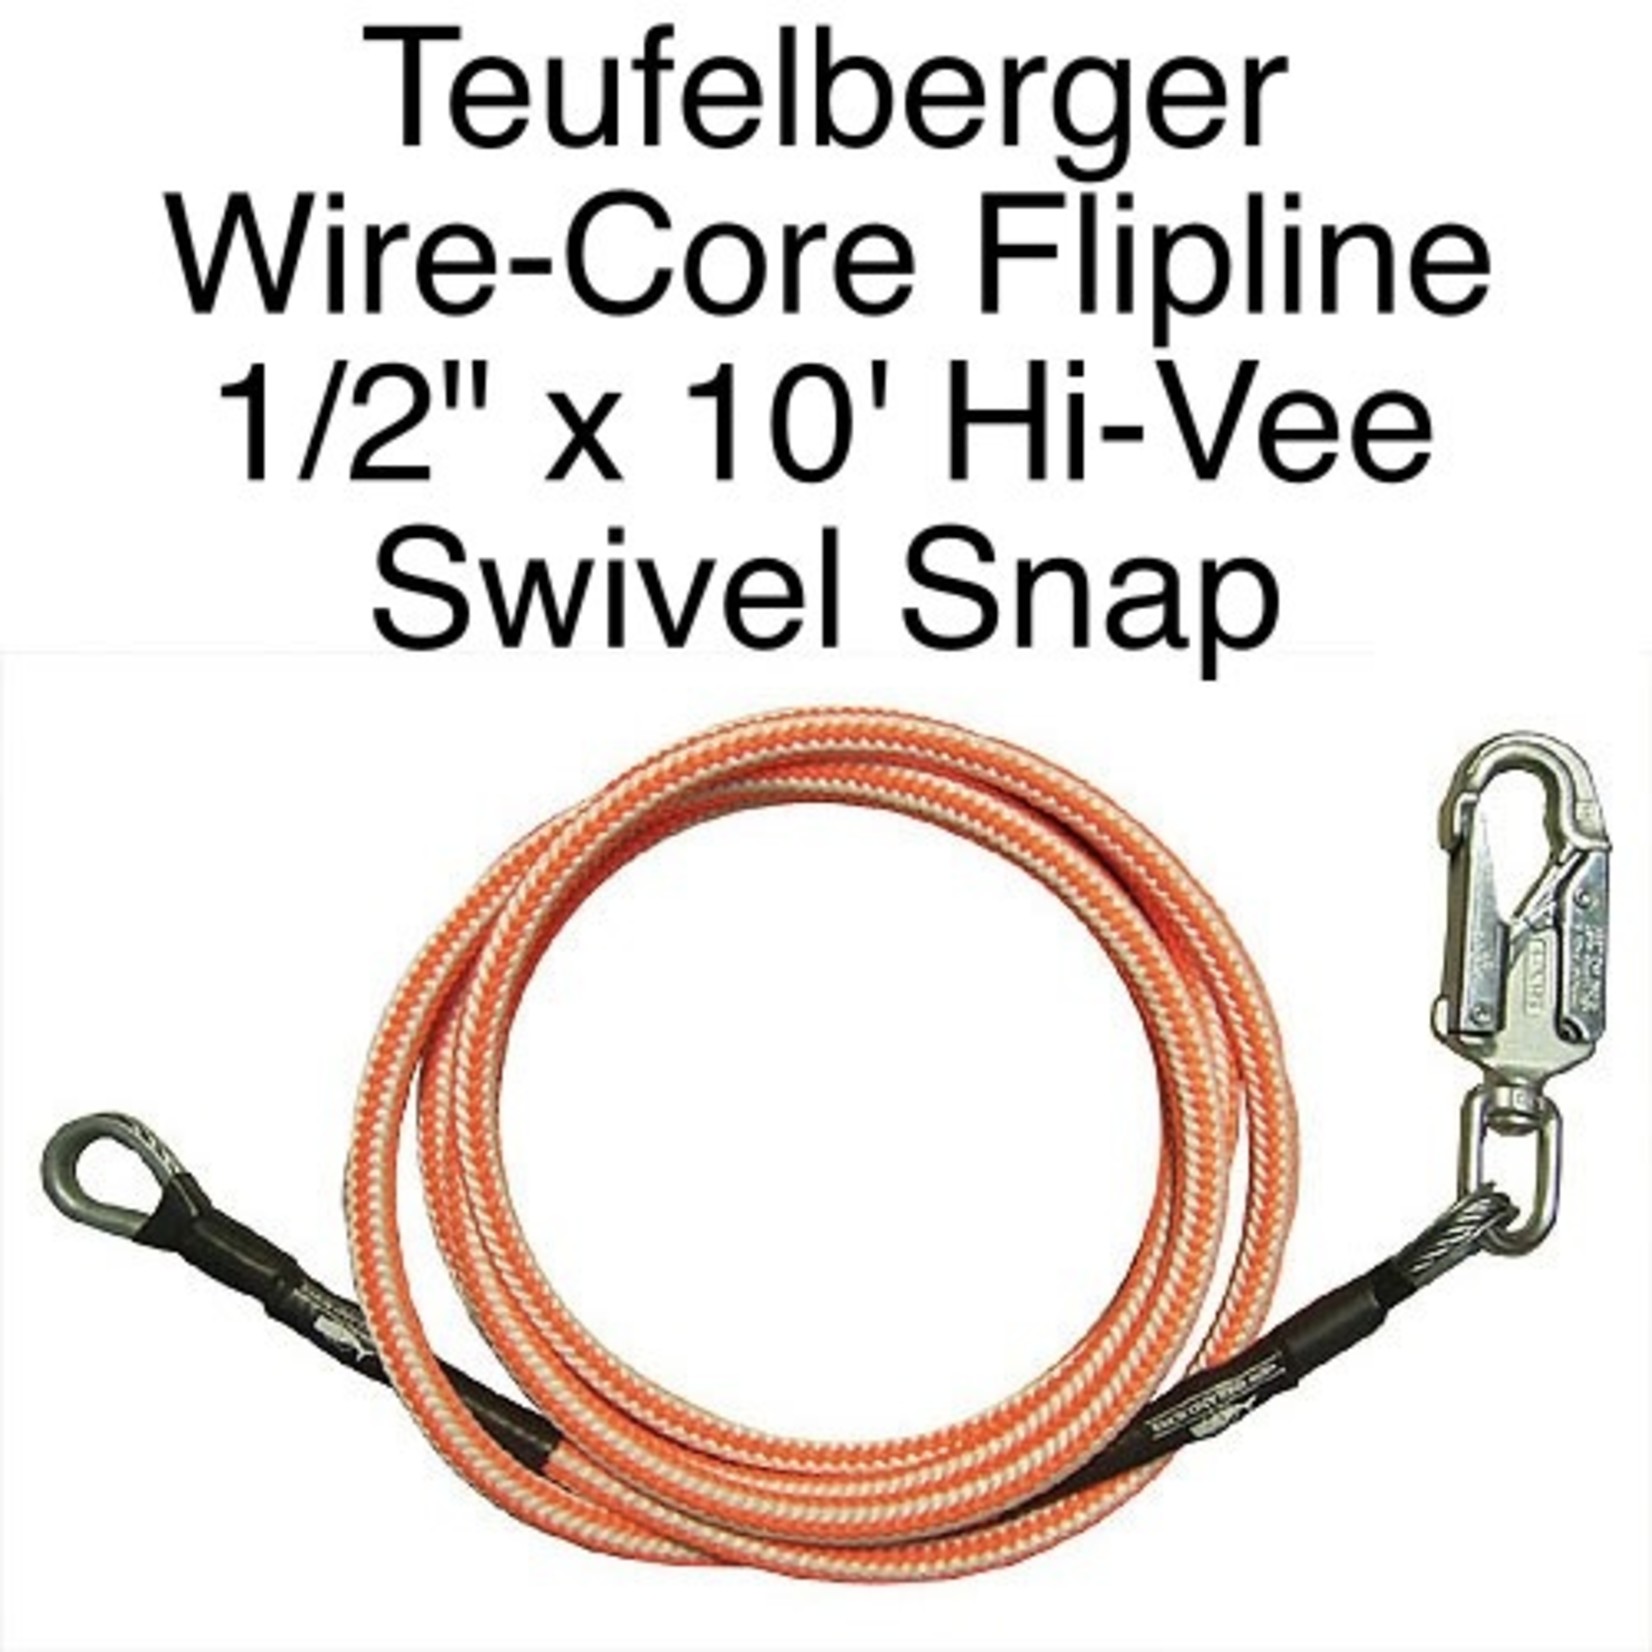 Teufelberger Flipline Hi-Vee 1/2in X 10 With Swivel Snap